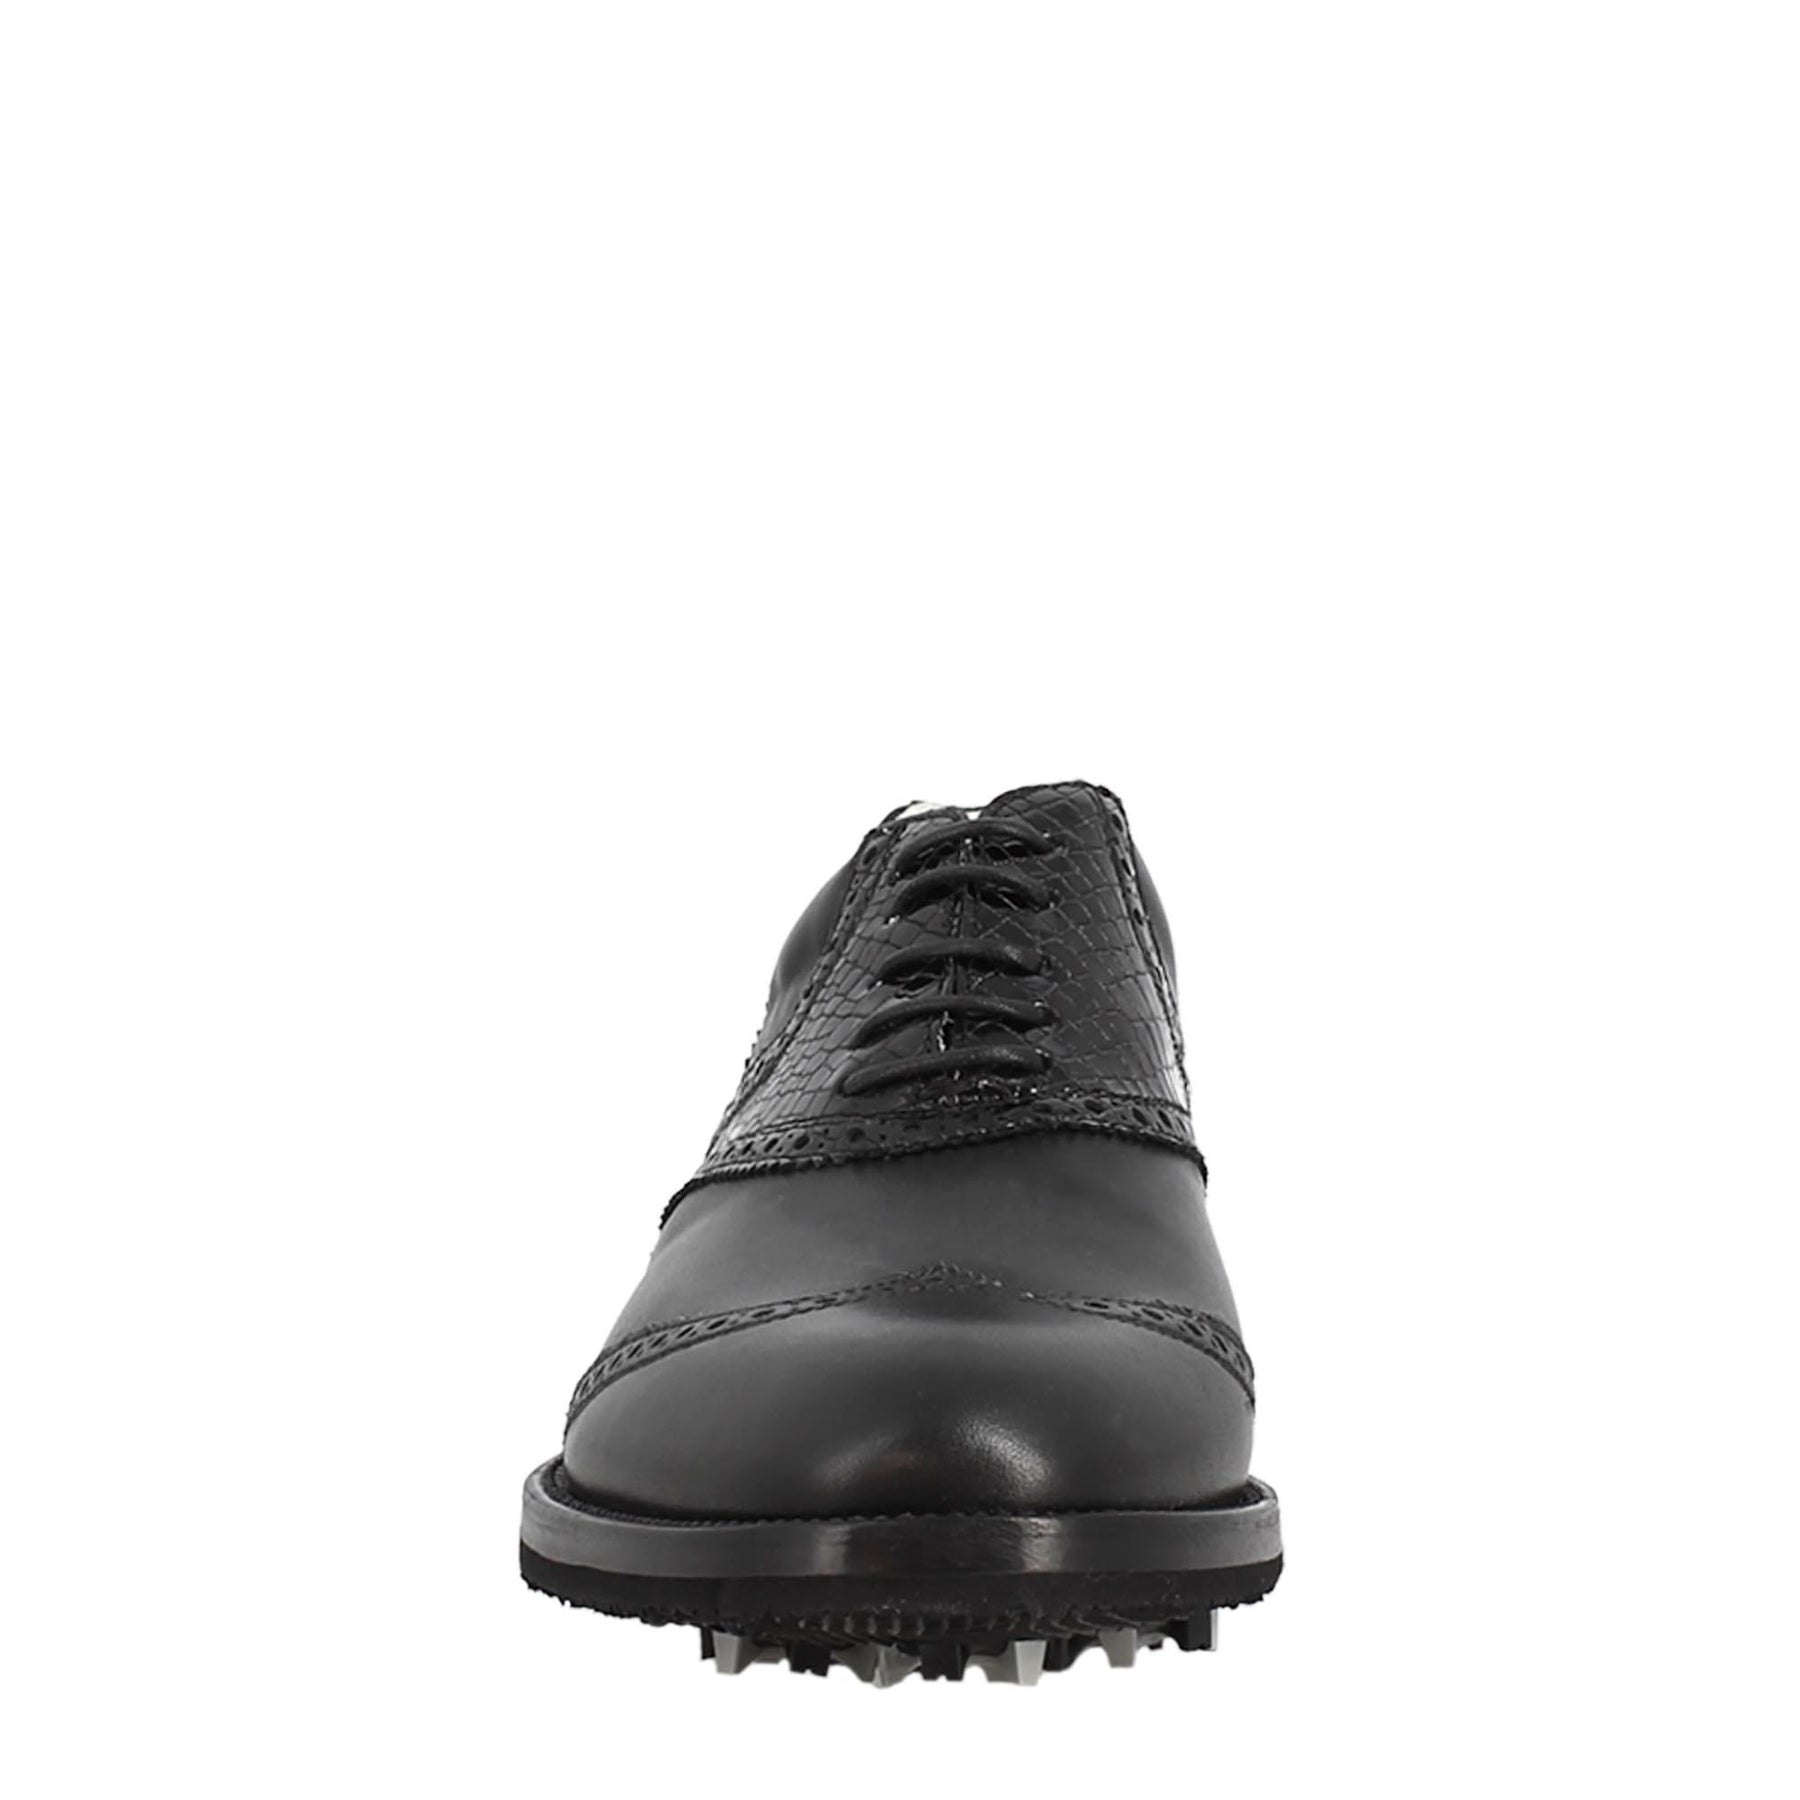 Chaussures de golf pour homme en cuir de coco noir, avec des détails de brogue faits à la main